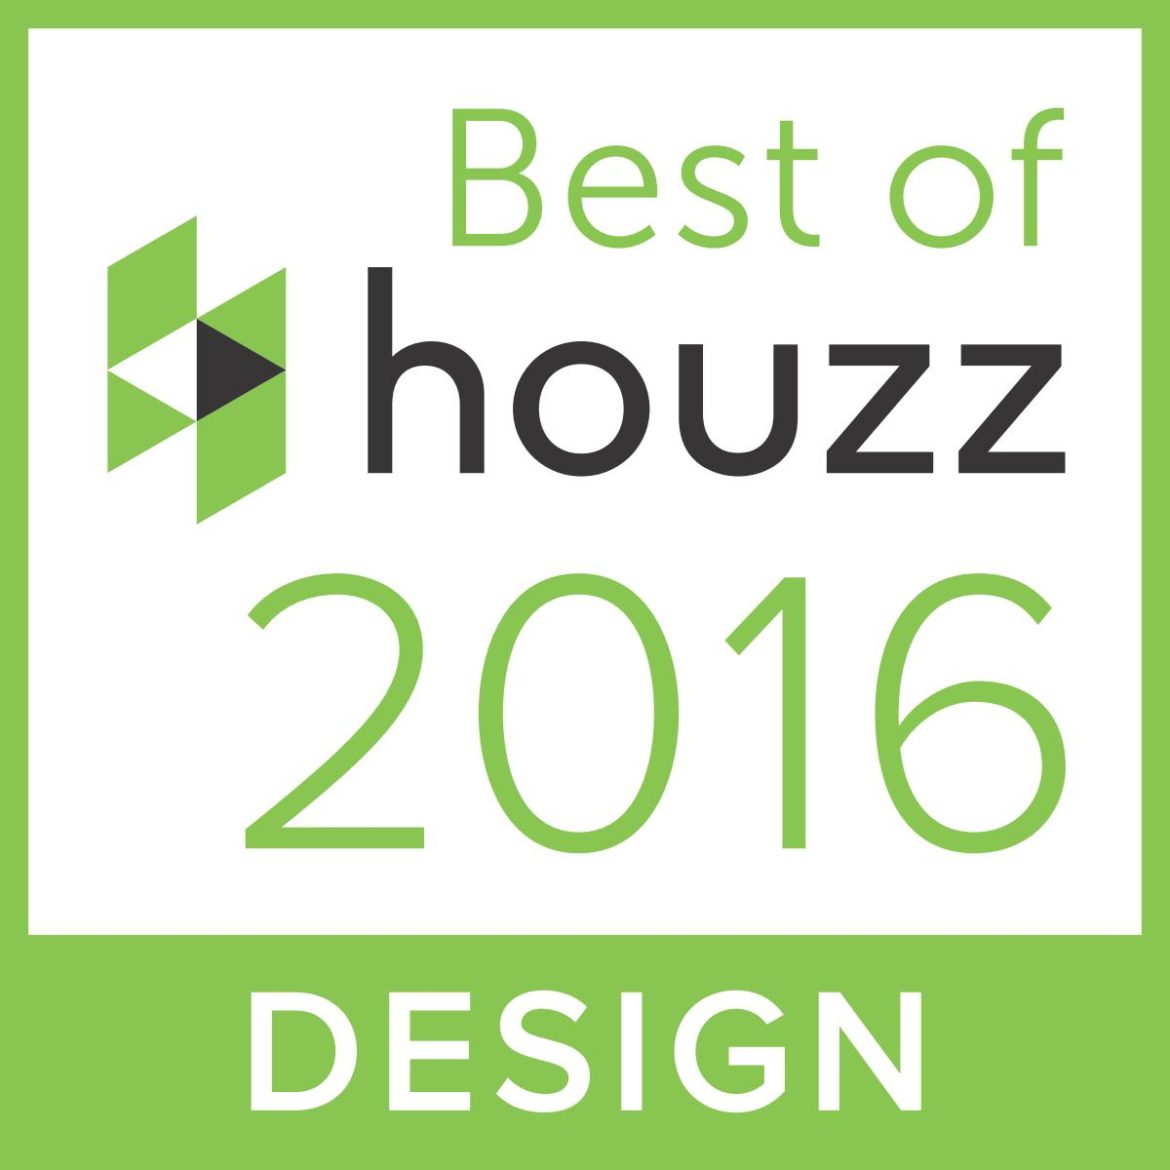 Best-of-Houzz_2016_design-1170x1170.jpg